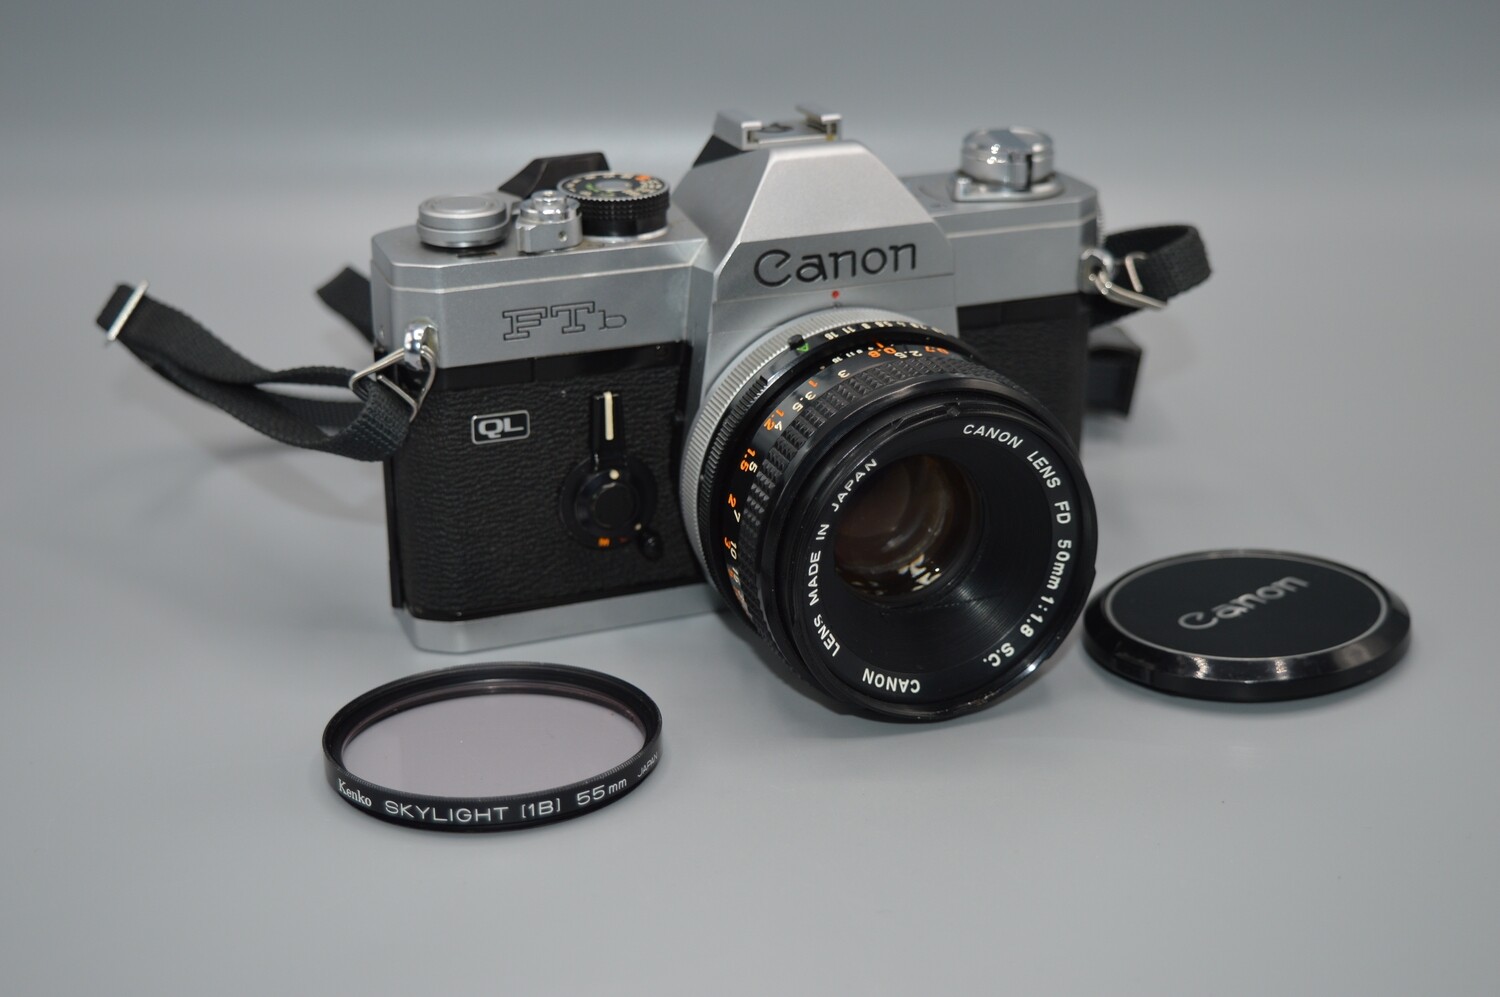 Canon FTB QL SLR 35mm Film Camera Fully serviced 1:1.8 50mm Lens